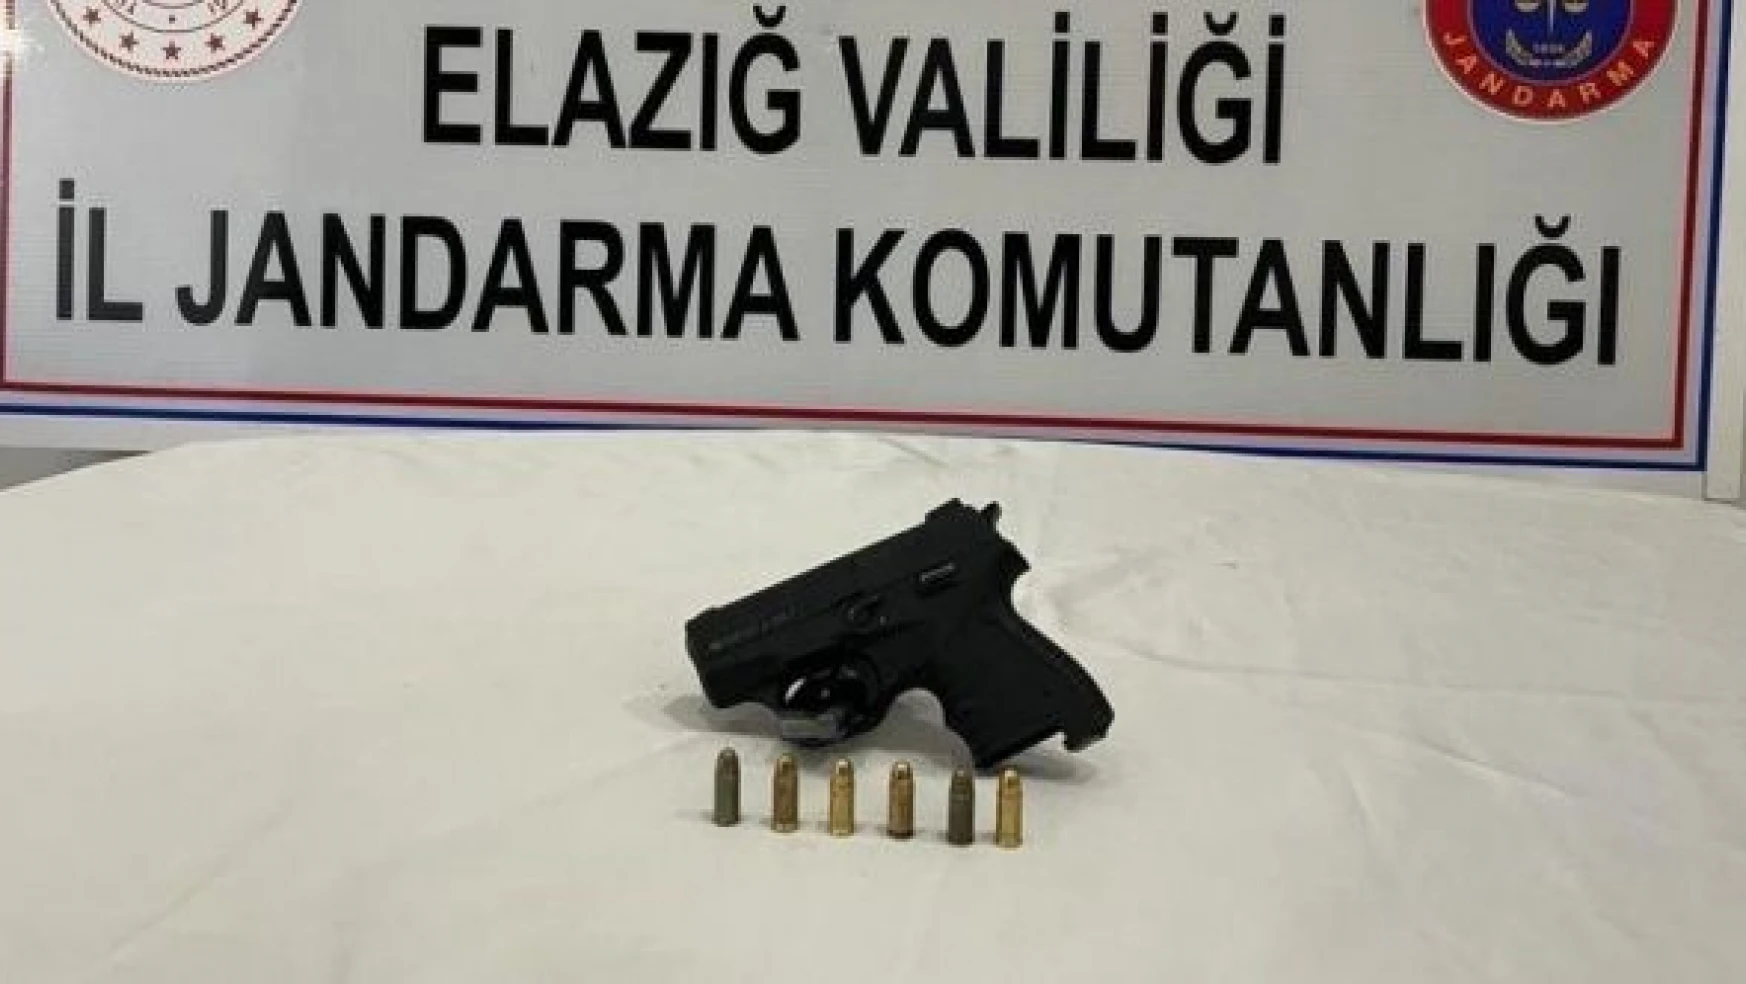 Elazığ'da sonradan gerçek silaha dönüştürülen tabanca ele geçirildi!